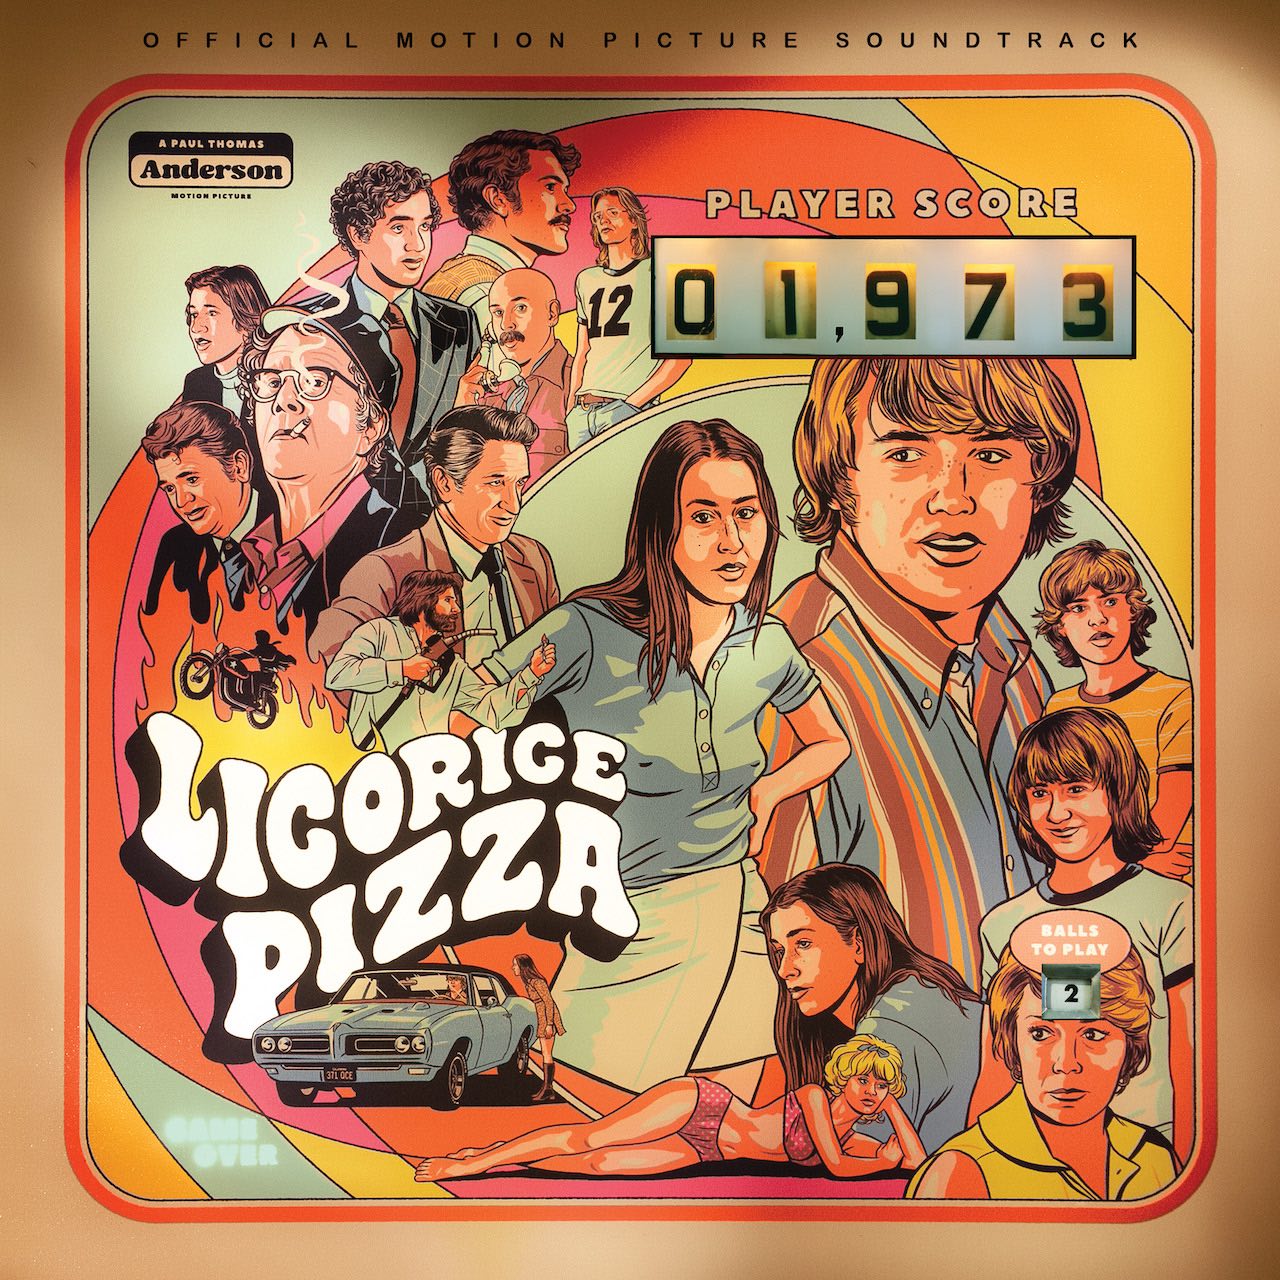 Licorice Pizza - Original Motion Picture Soundtrack (Vinyl 2LP)